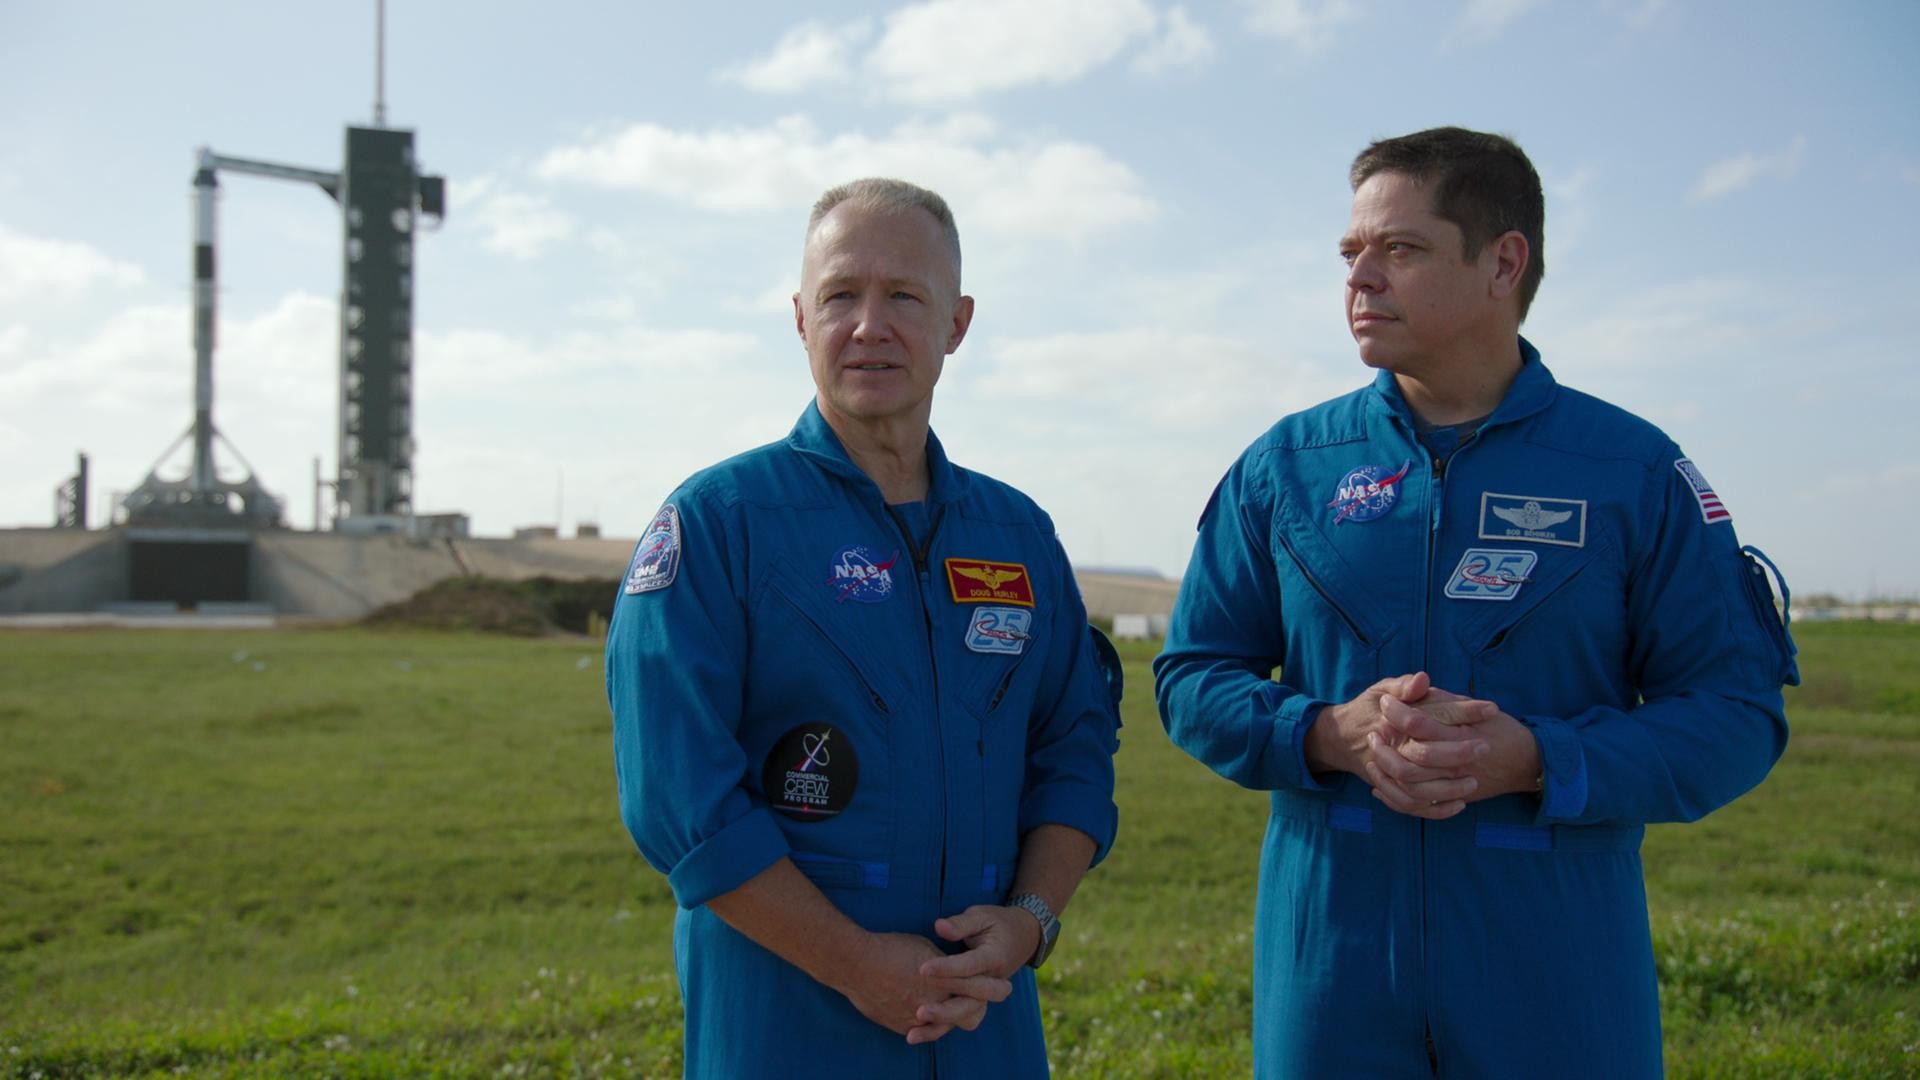 De volta ao espaço, nesse documentário  mostrará a inovação espacial que Elon Musk pretende fazer (Foto: Netflix)